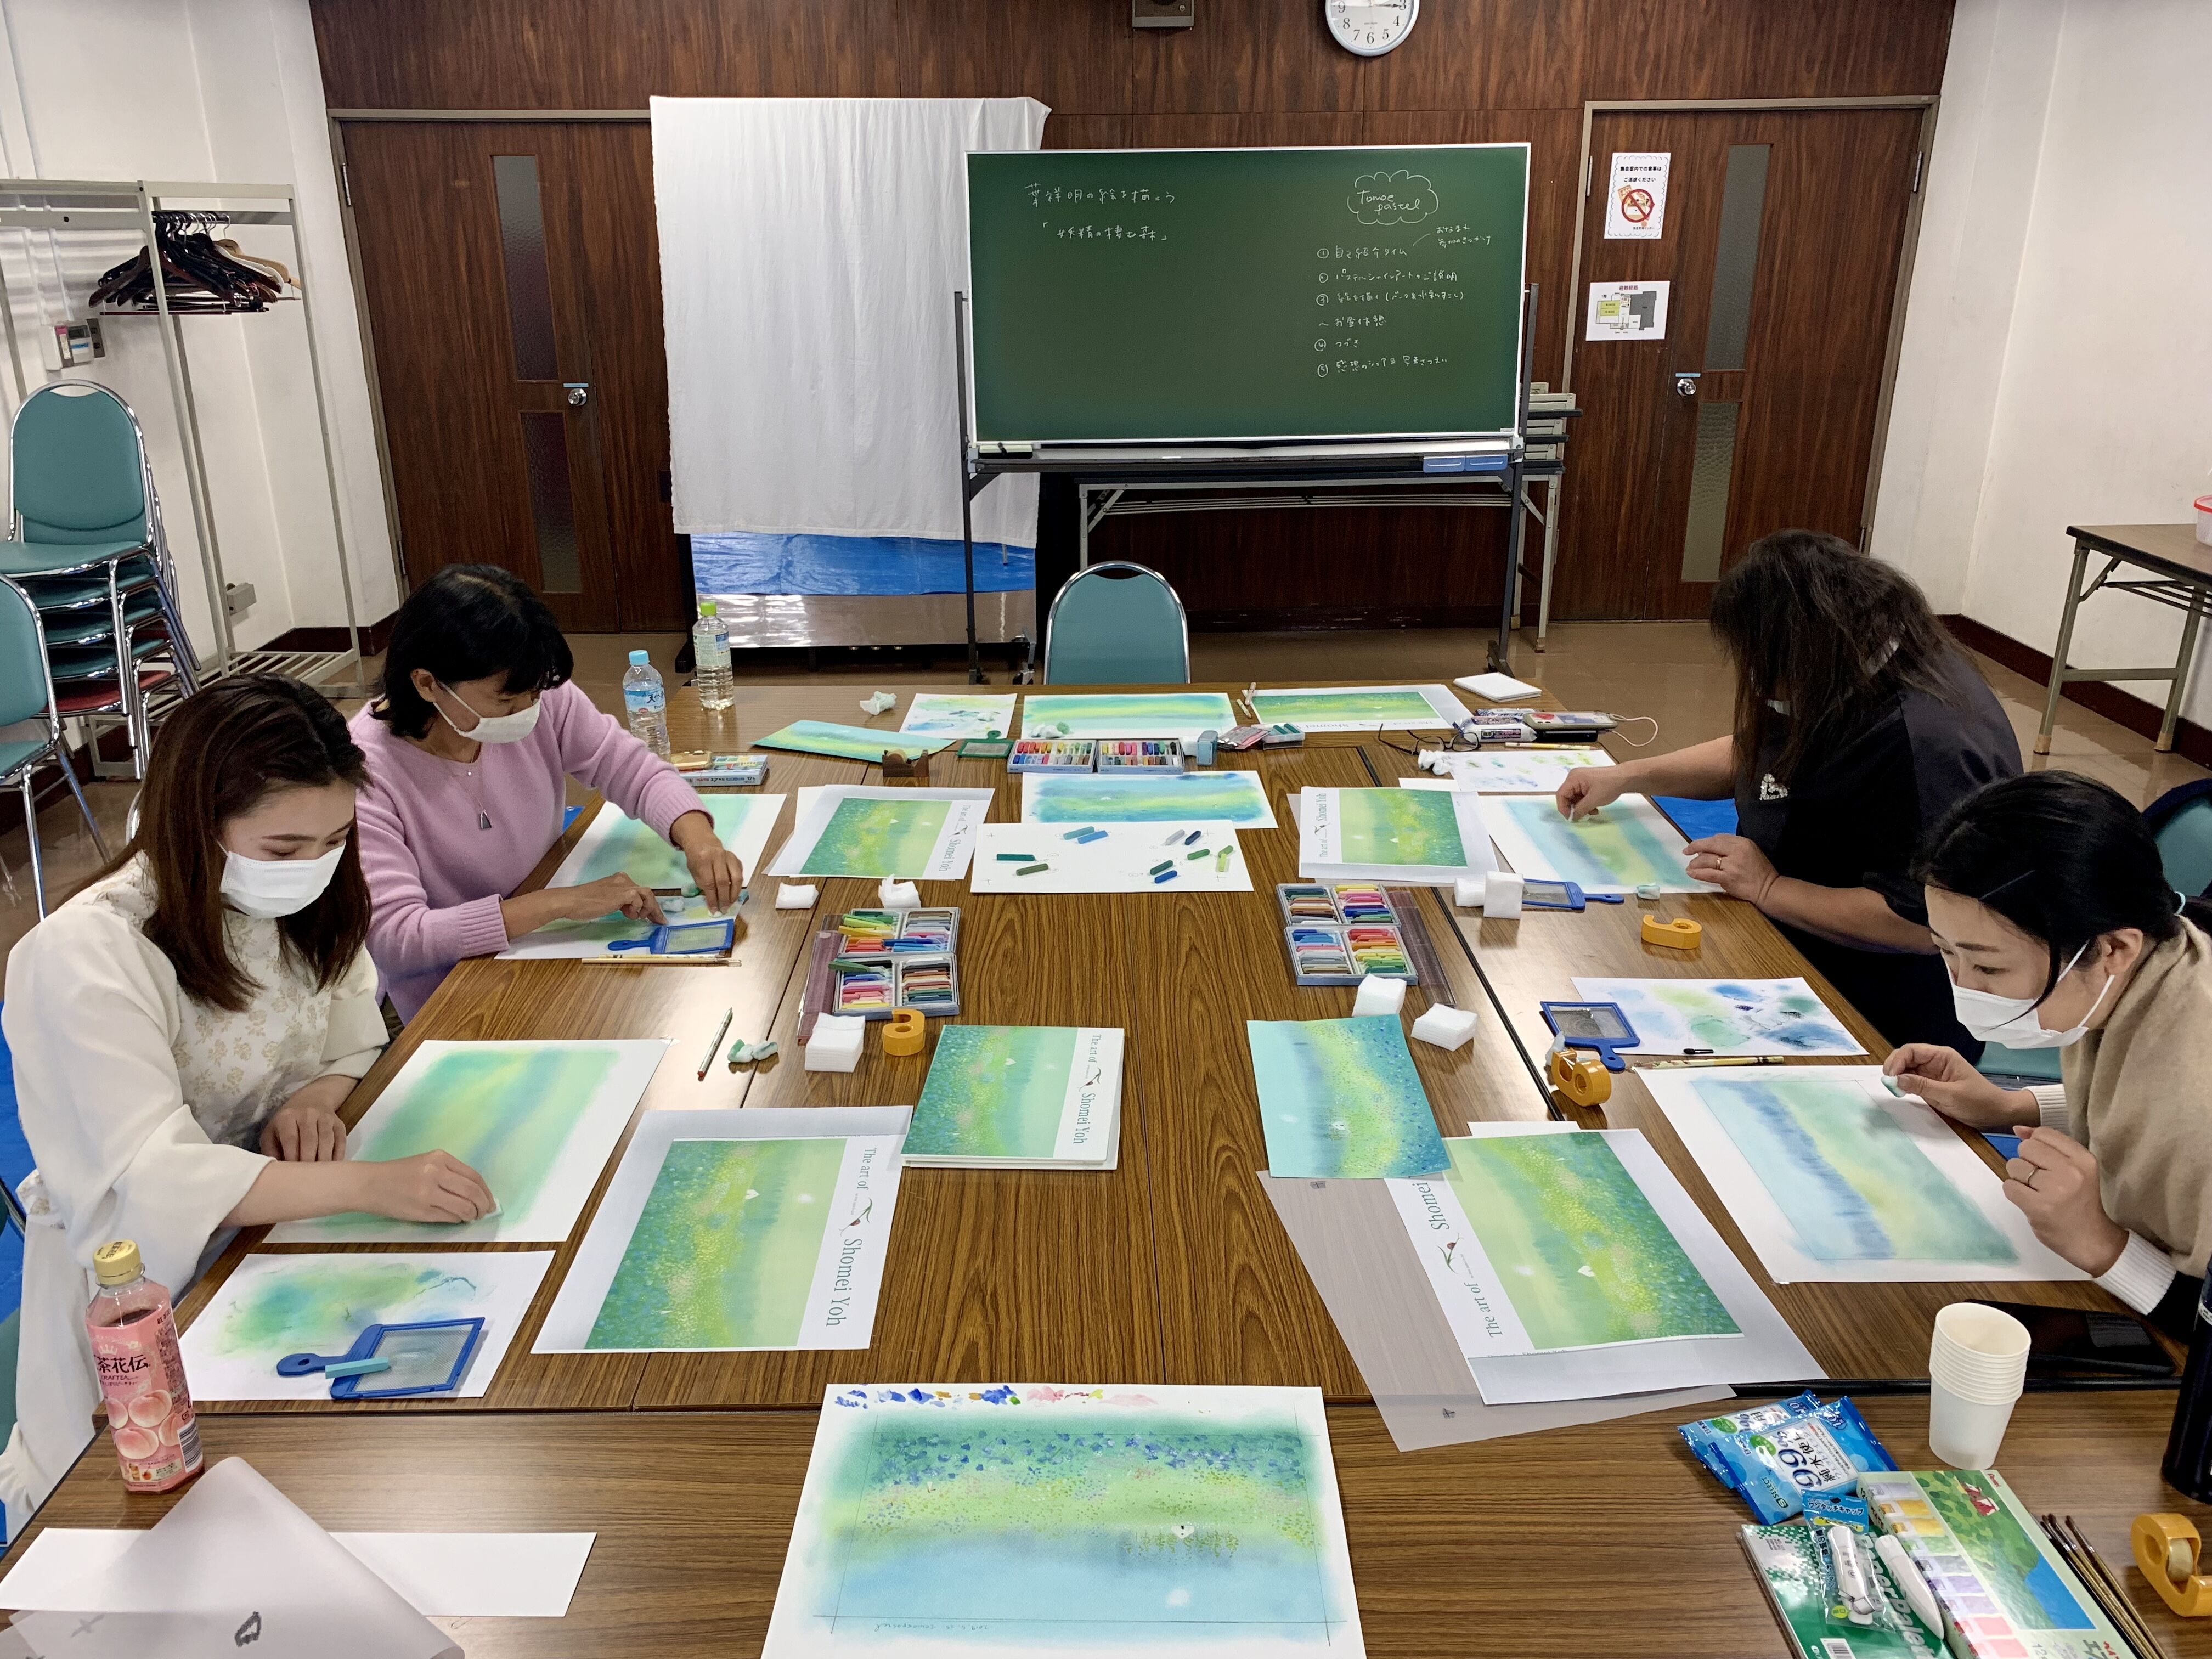 （葉祥明美術館公認）パステルと水彩で葉祥明さんの絵を描く講座「妖精の棲む森」の写真2枚目